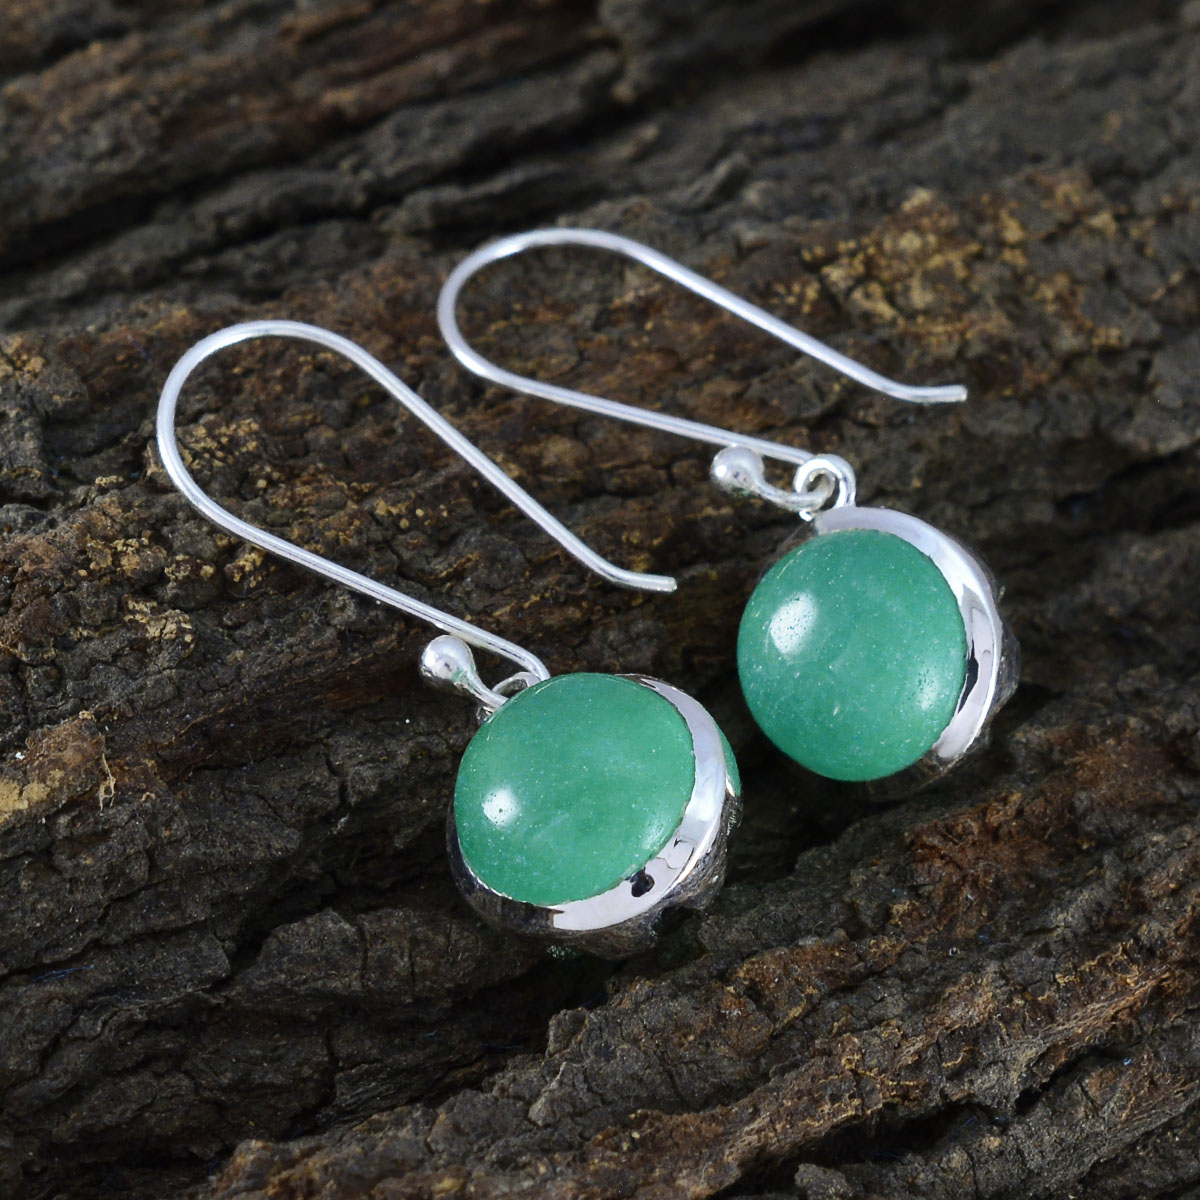 Riyo Graceful Sterling Silver Earring For Wife Green Onyx Earring Bezel Setting Green Earring Dangle Earring